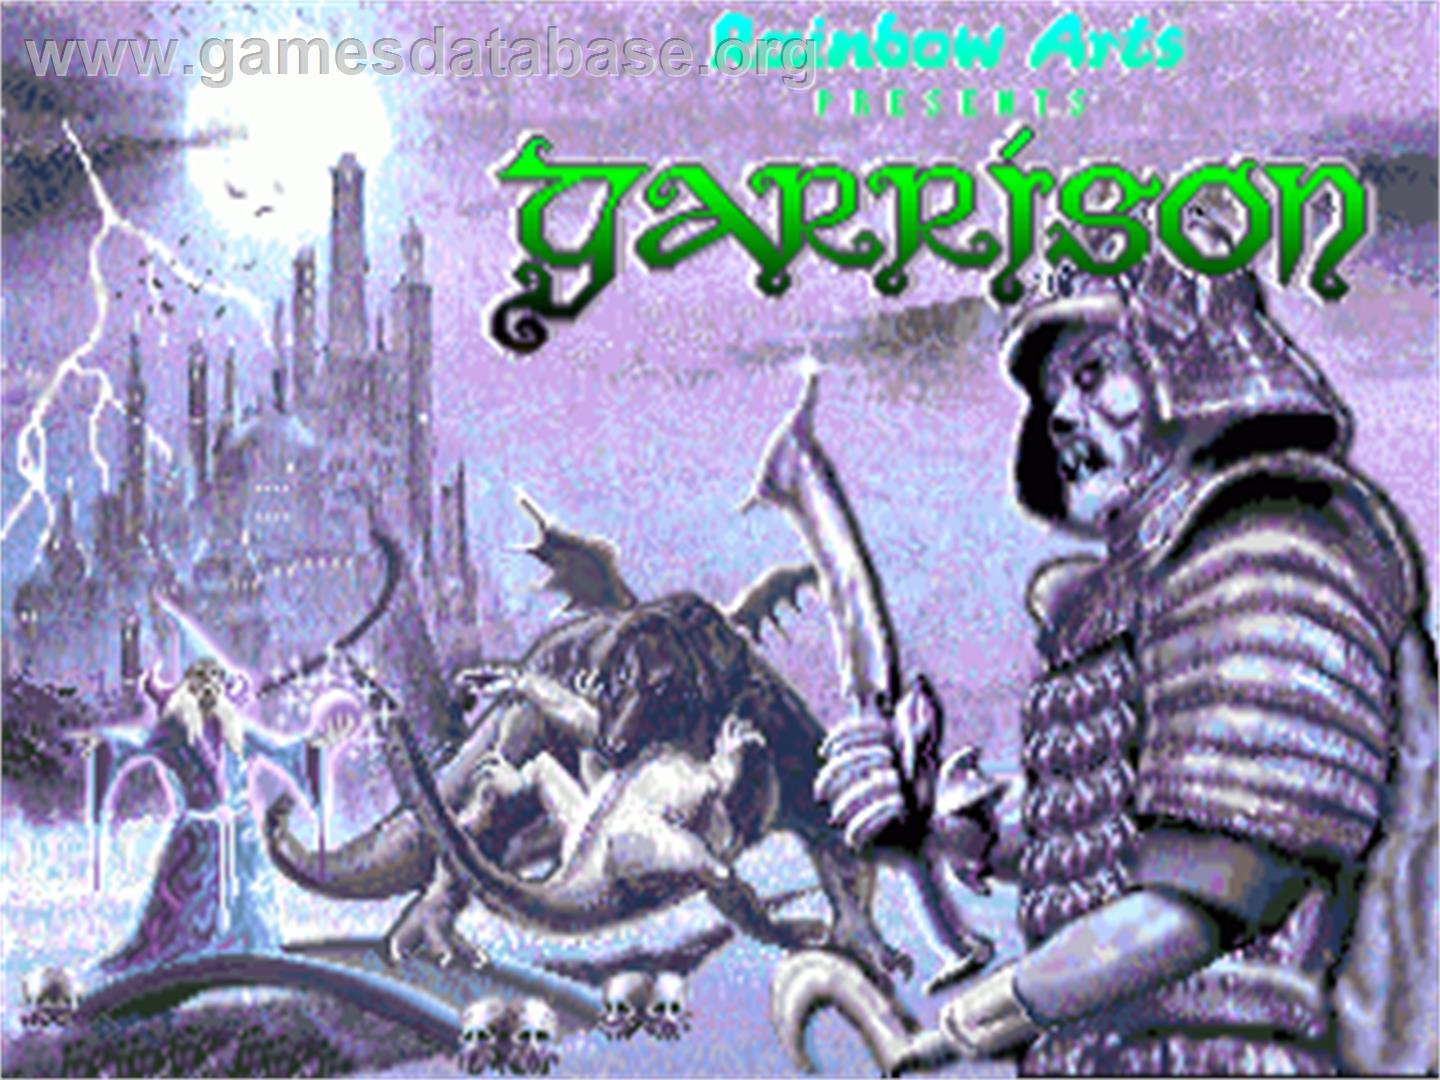 Garrison - Commodore Amiga - Artwork - Title Screen